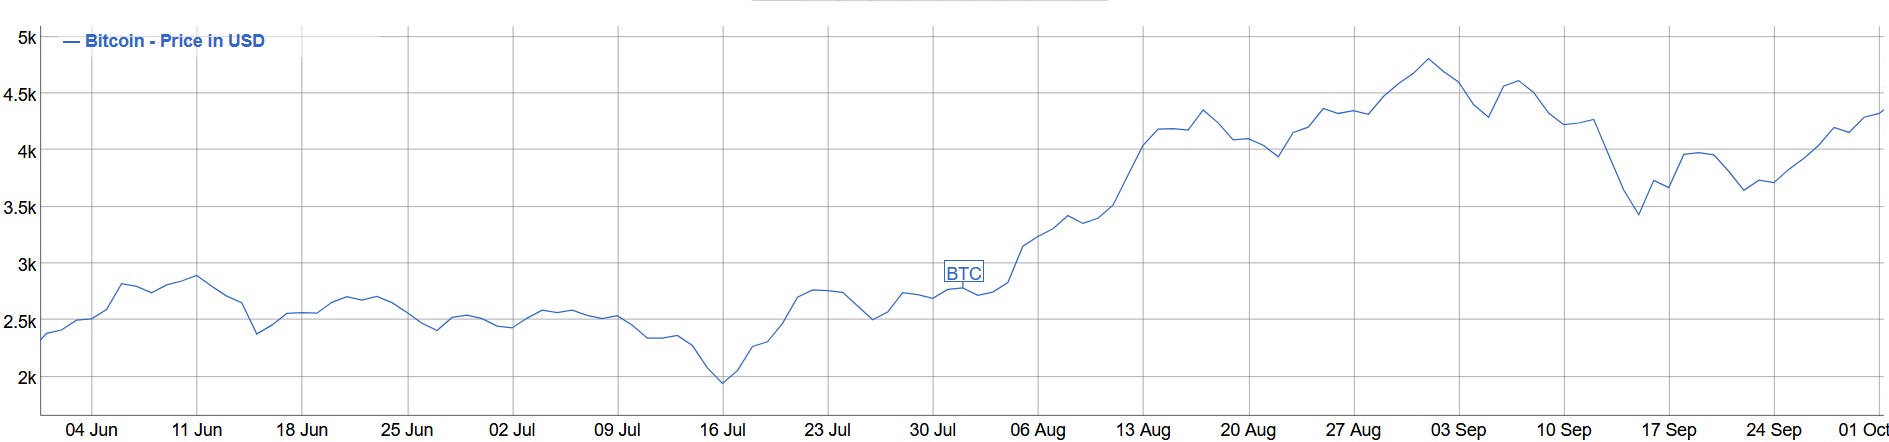 btc price.jpg